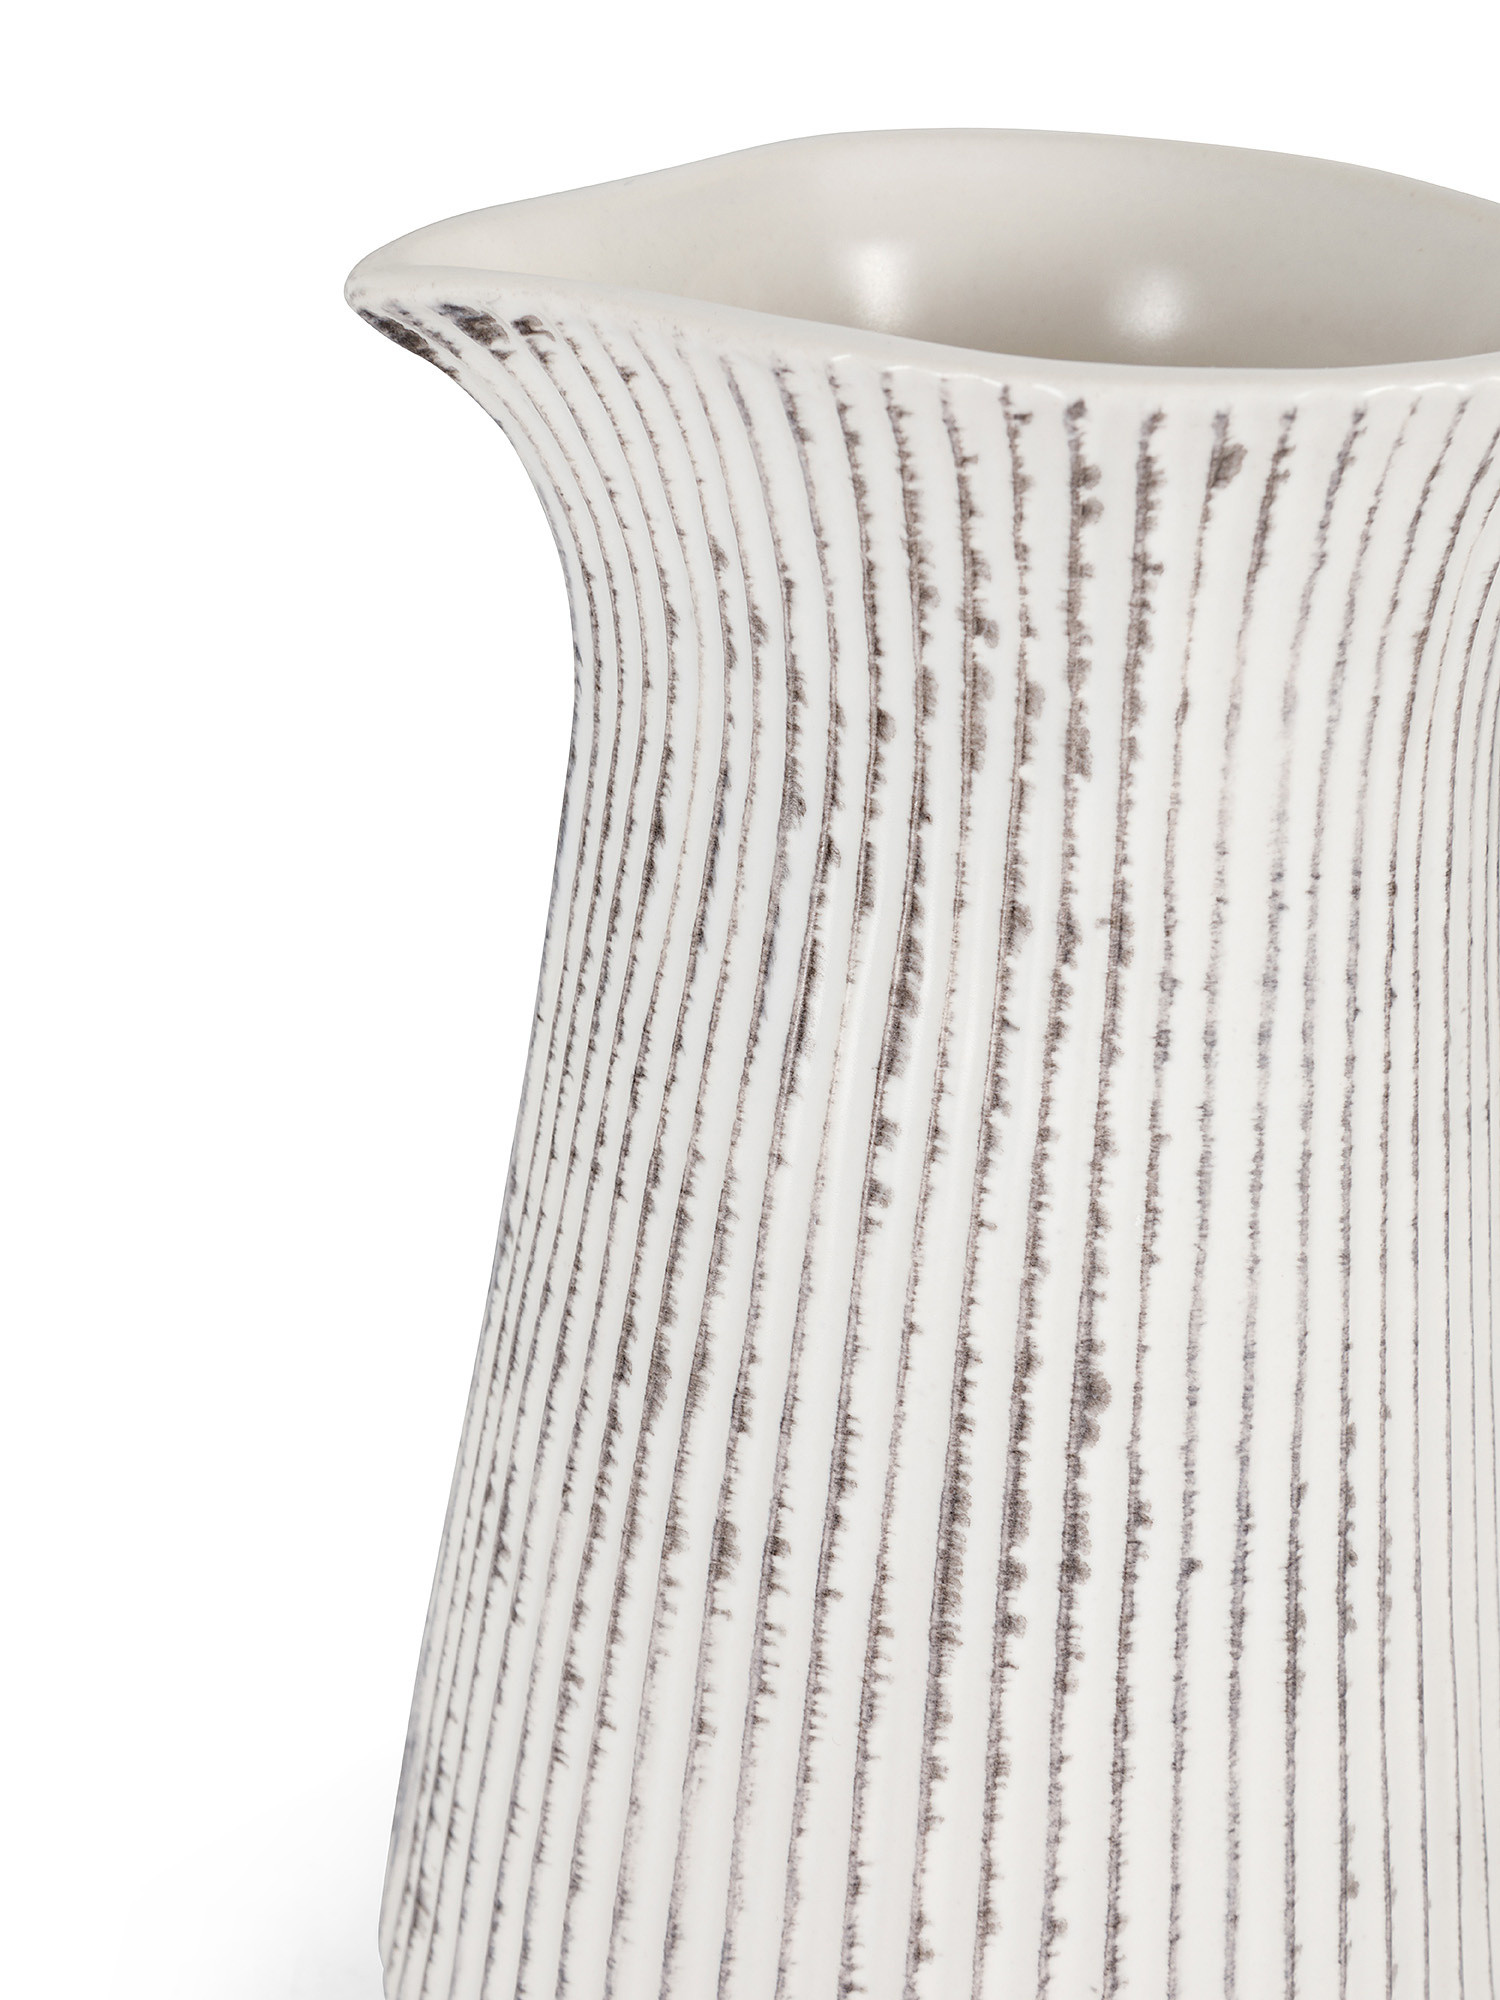 Caraffa ceramica effetto rigato, Bianco, large